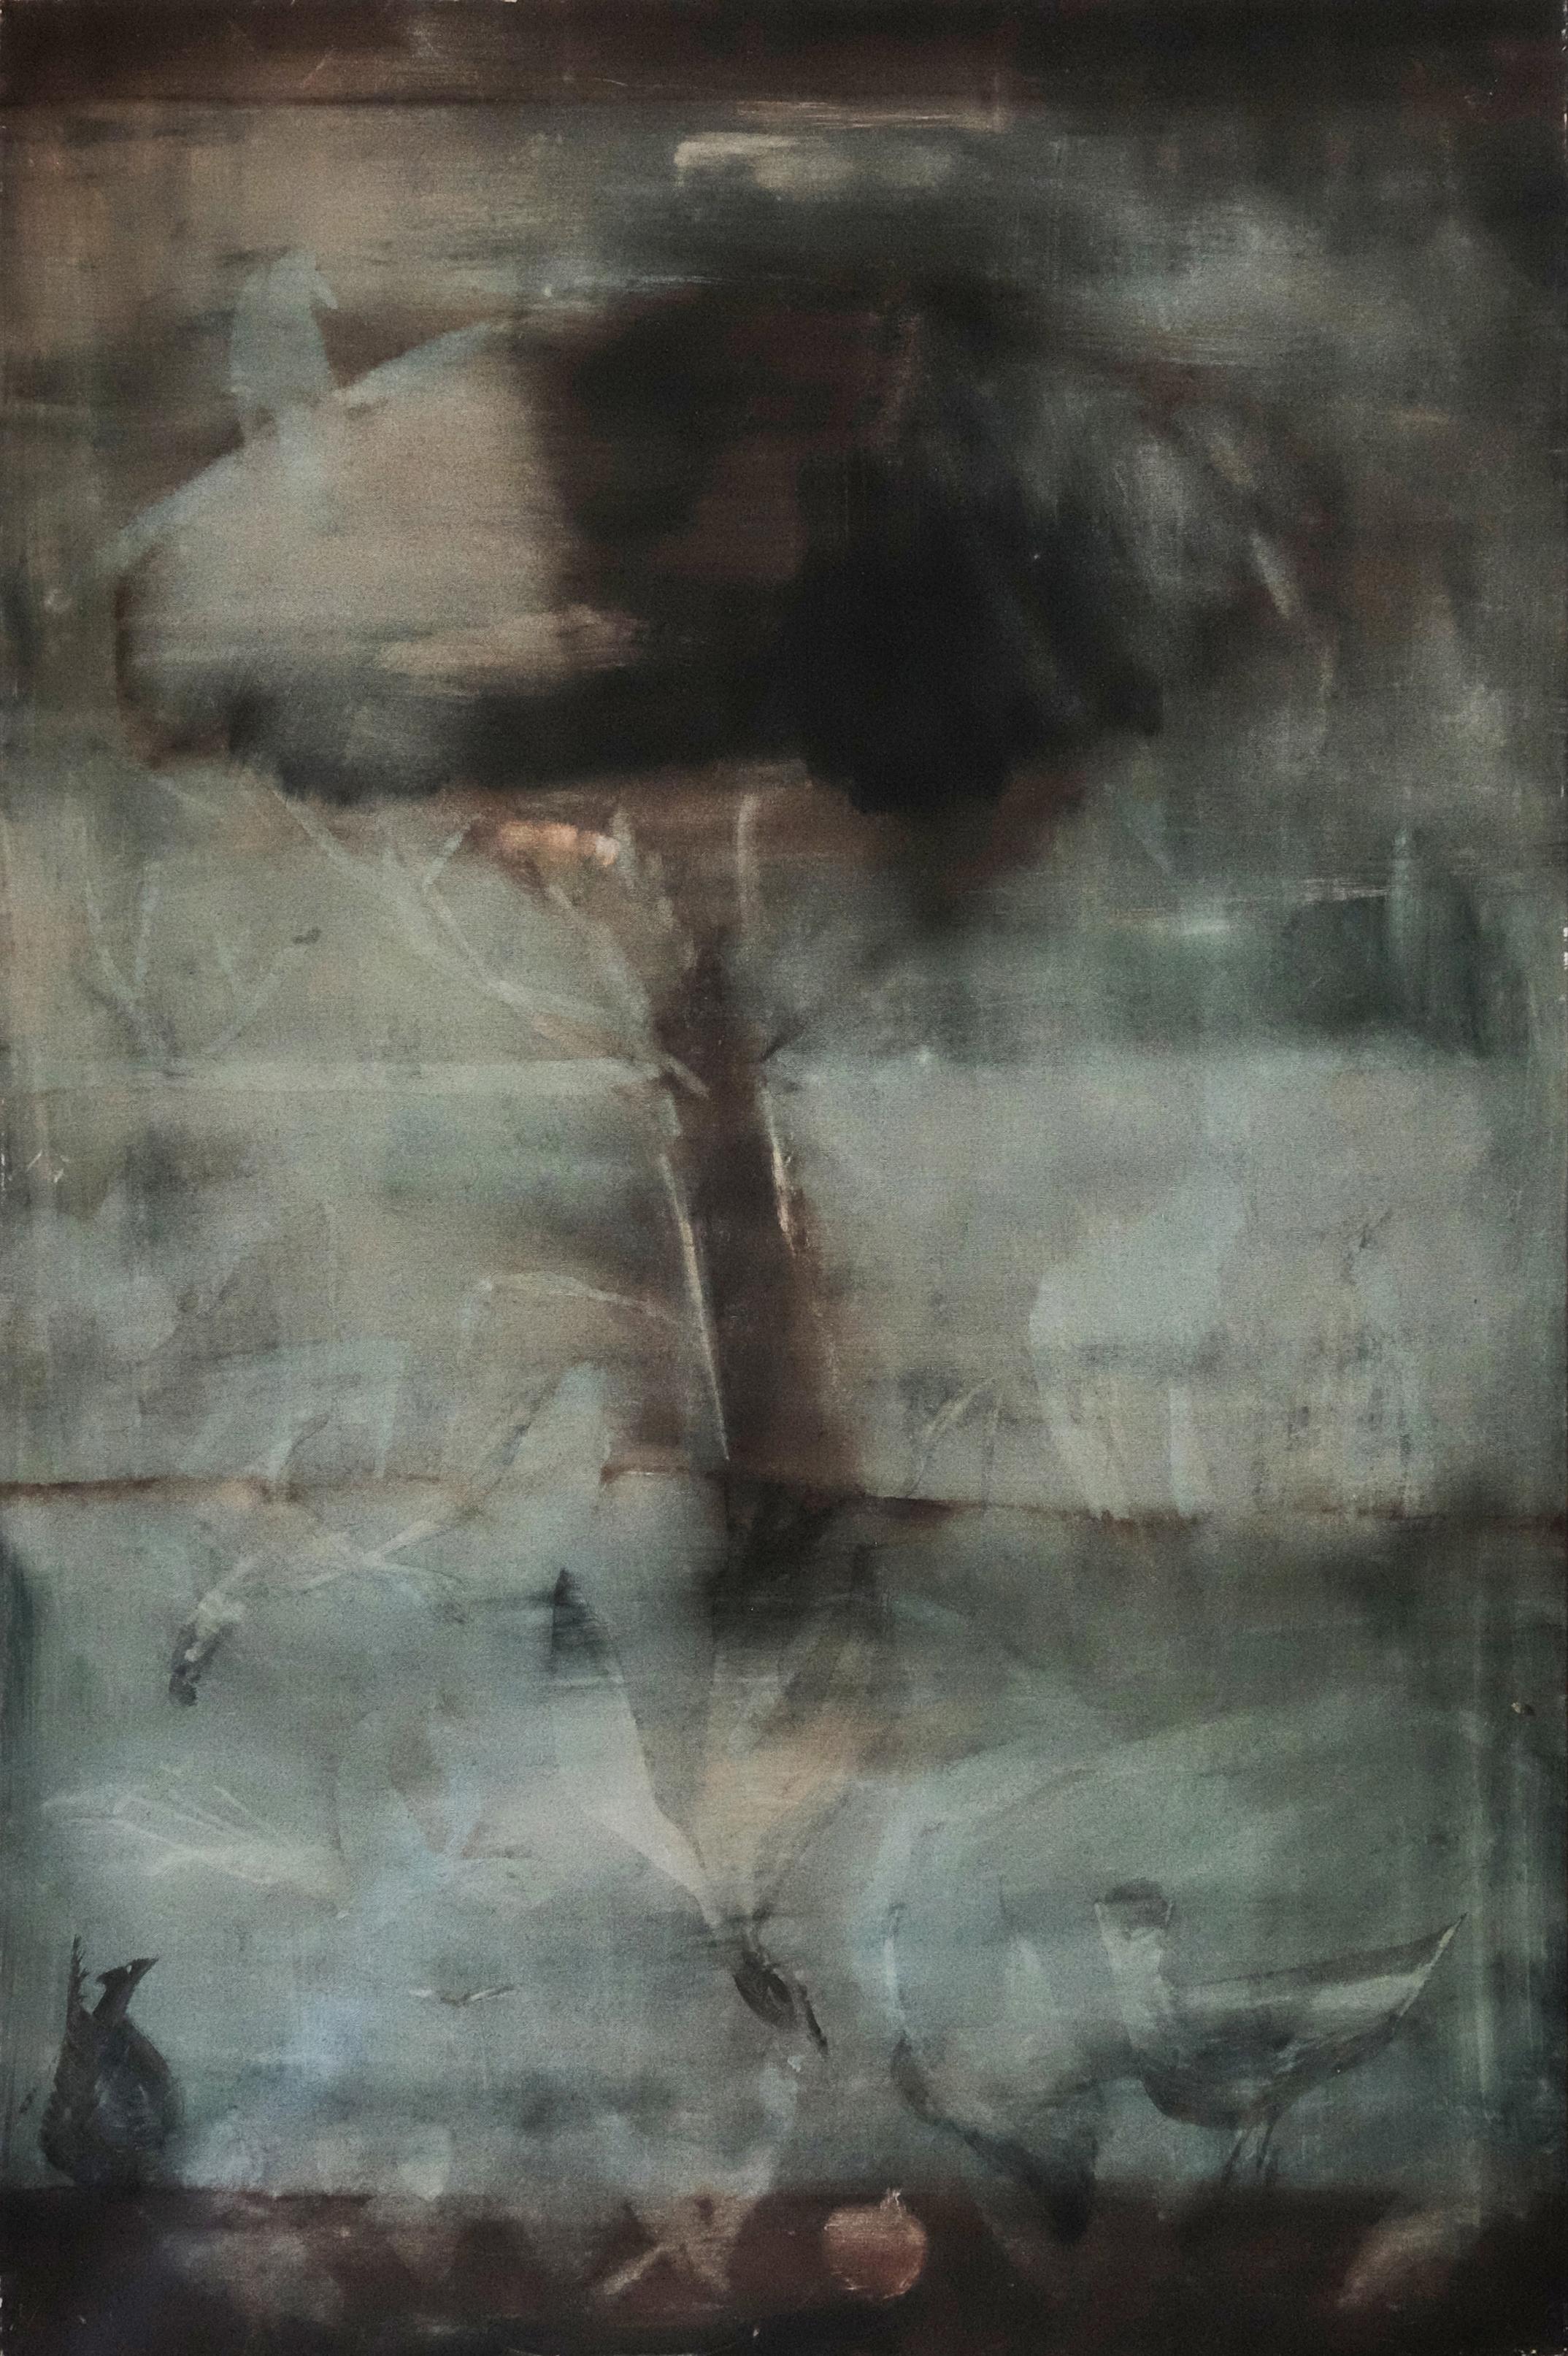 Tempera on canvas, 2019. Mirja Ilkka

